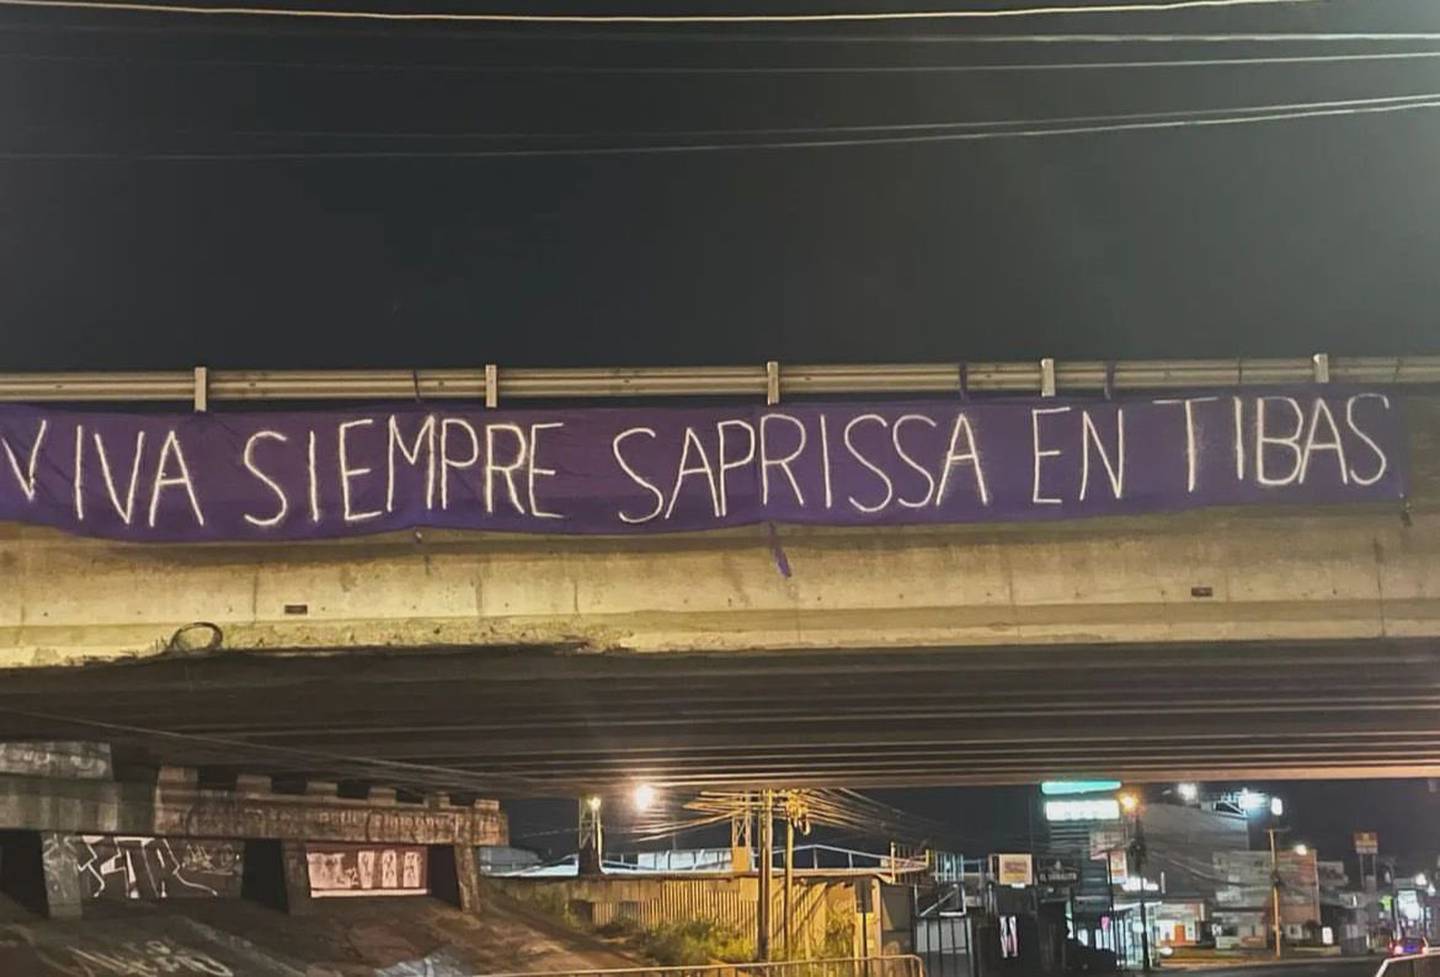 Aficionados de Saprissa colgaron una manta en uno de los principales puentes de Tibás. Las fanáticos se pronunciaron en contra de un nuevo estadio lejos de donde está hoy en día la Cueva.